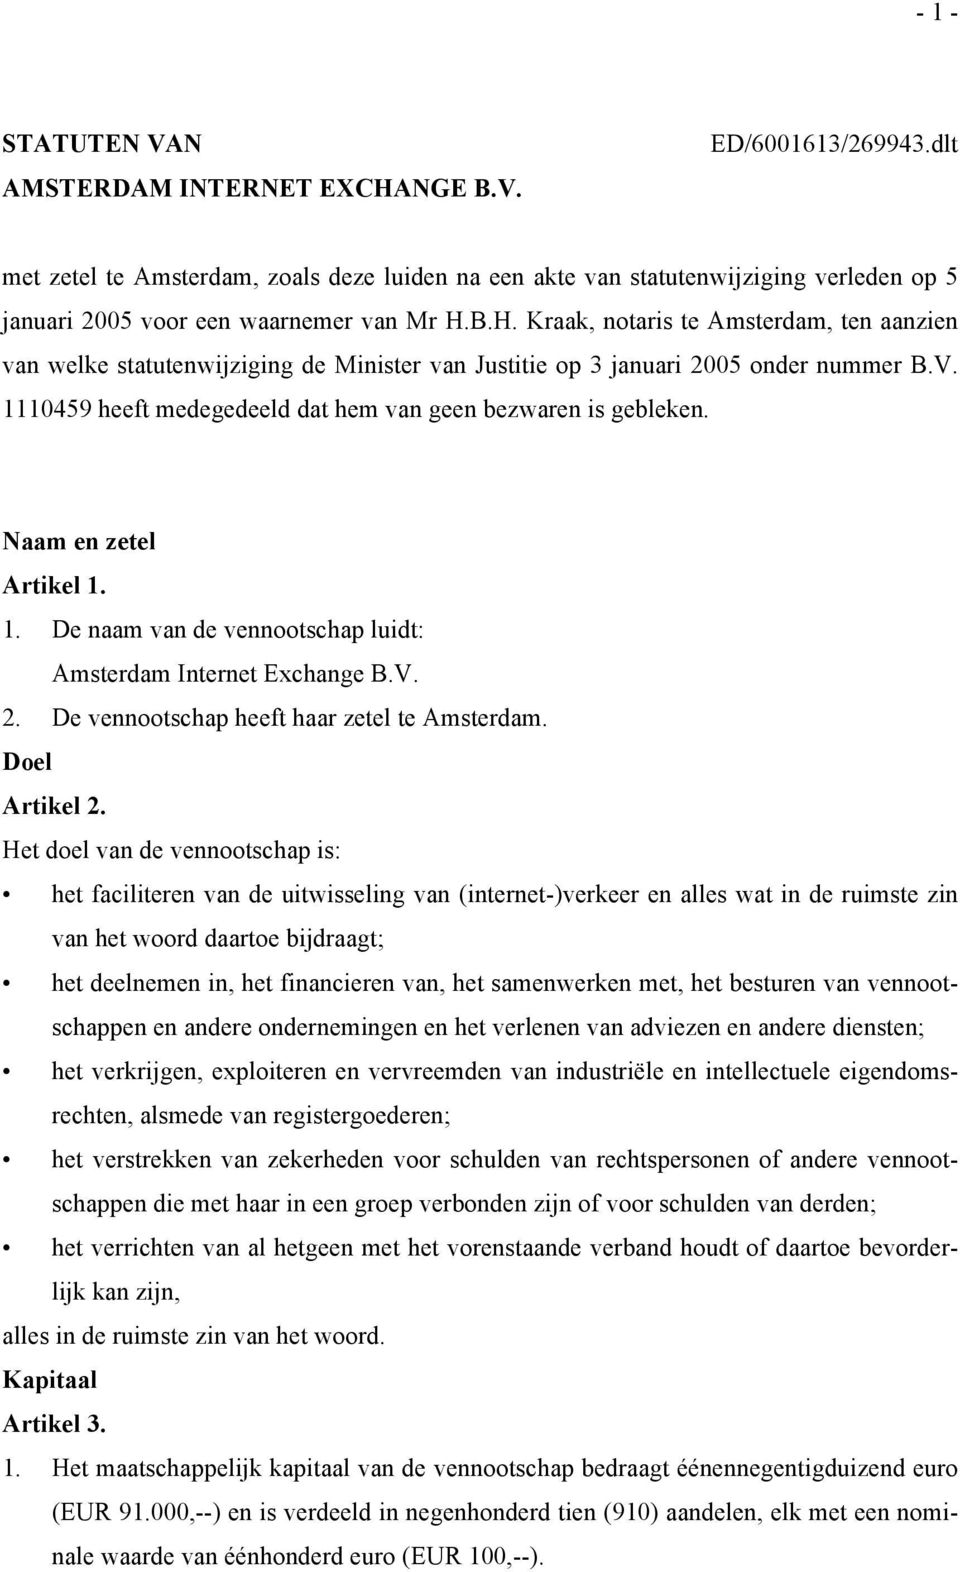 B.H. Kraak, notaris te Amsterdam, ten aanzien van welke statutenwijziging de Minister van Justitie op 3 januari 2005 onder nummer B.V. 1110459 heeft medegedeeld dat hem van geen bezwaren is gebleken.